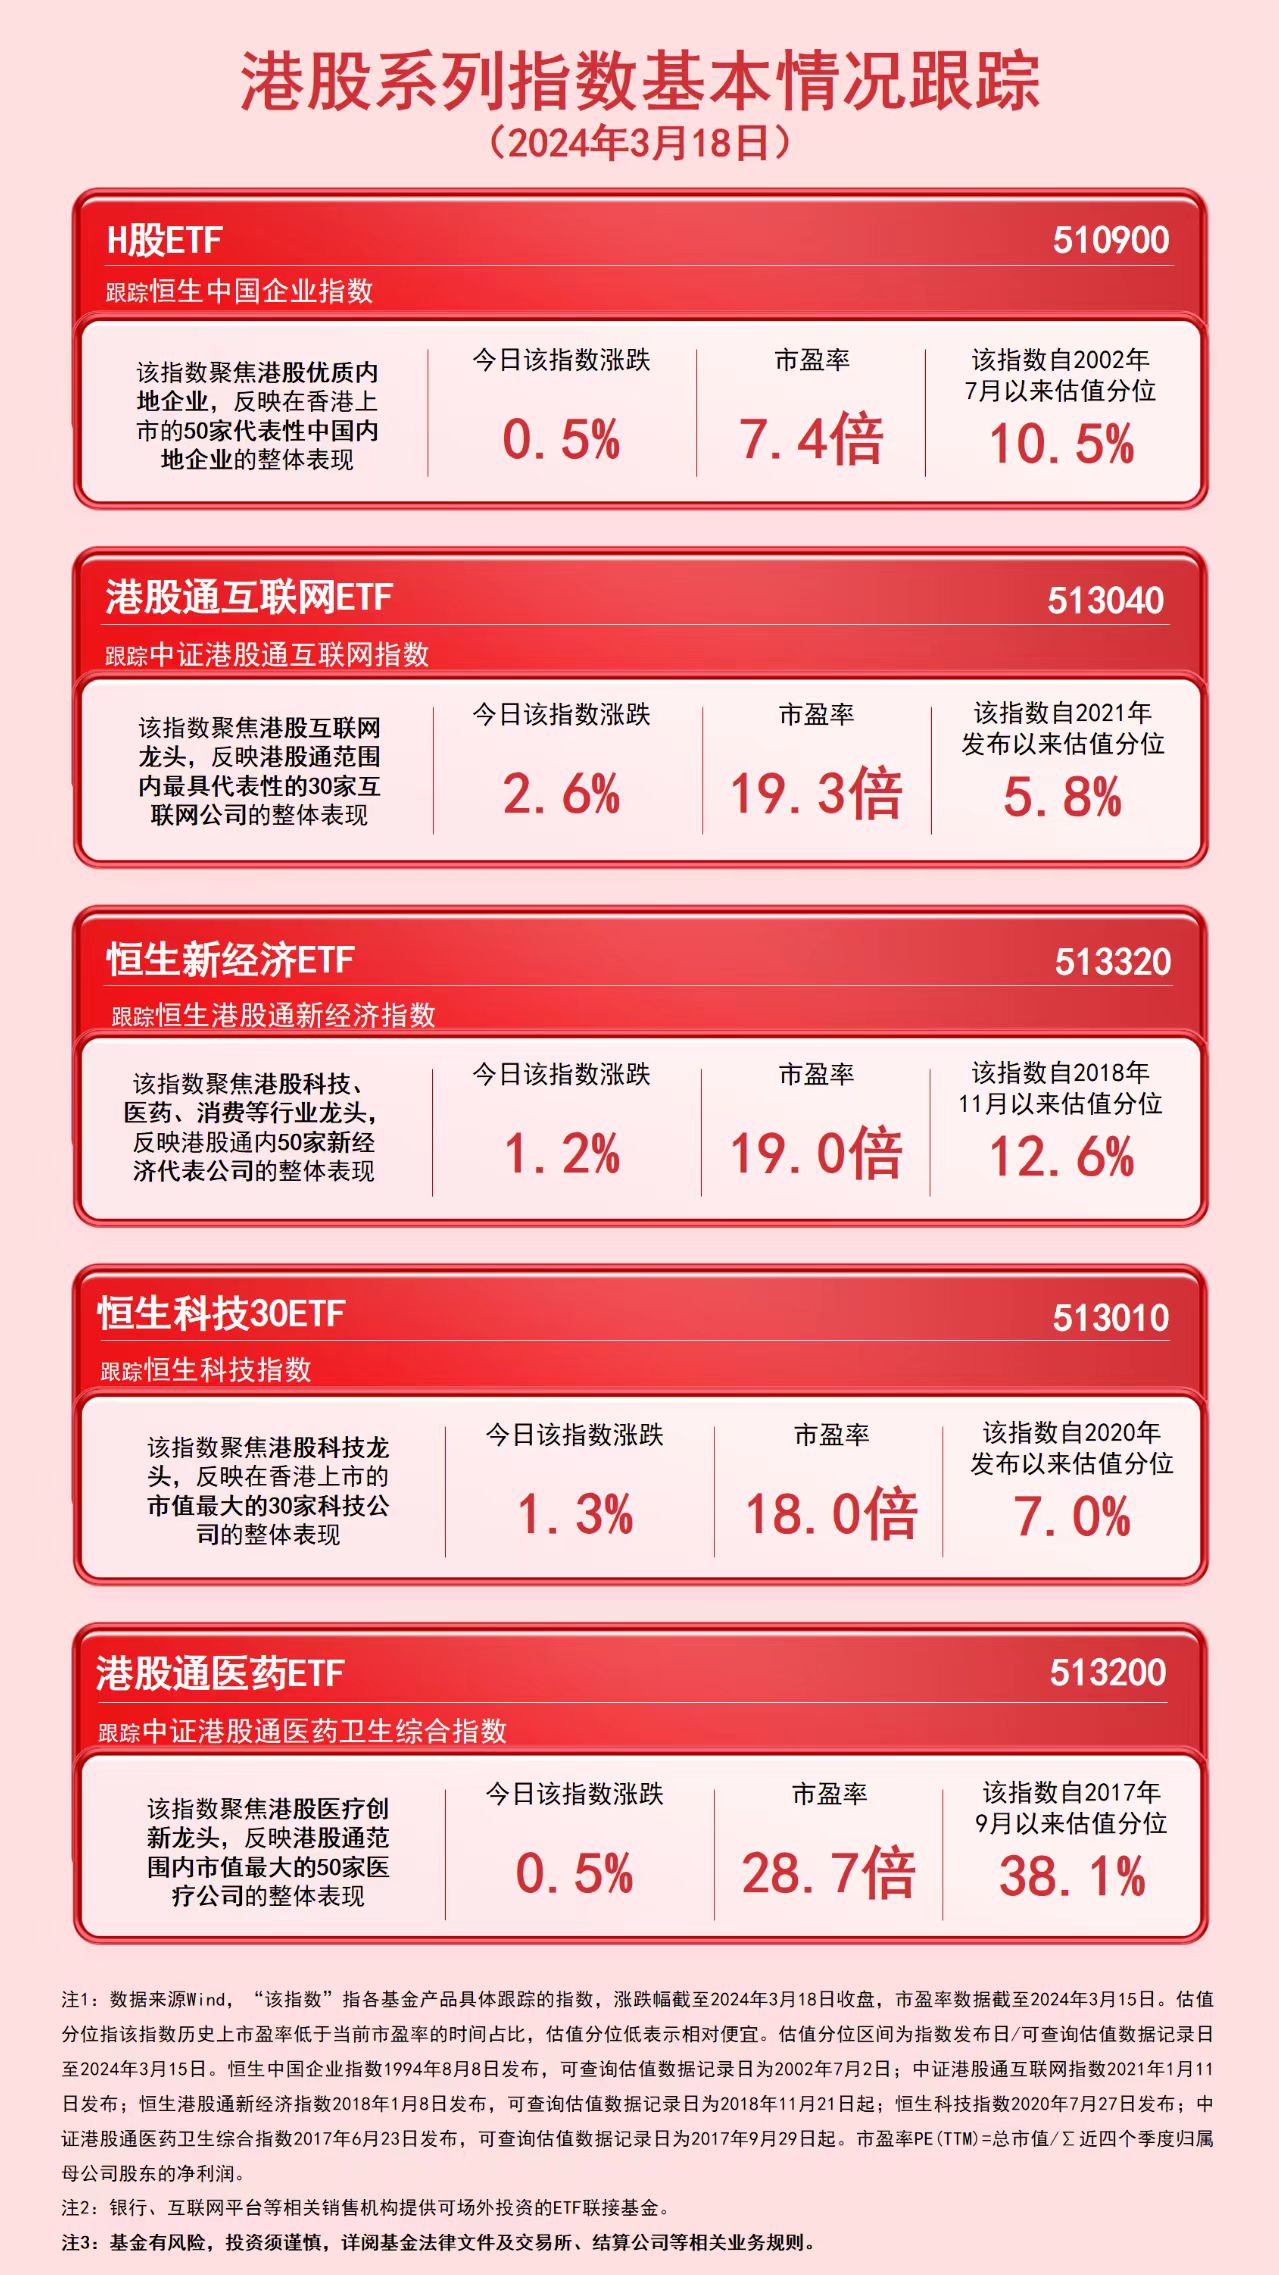 南宫28在线注册网站港股众个指数今日上涨